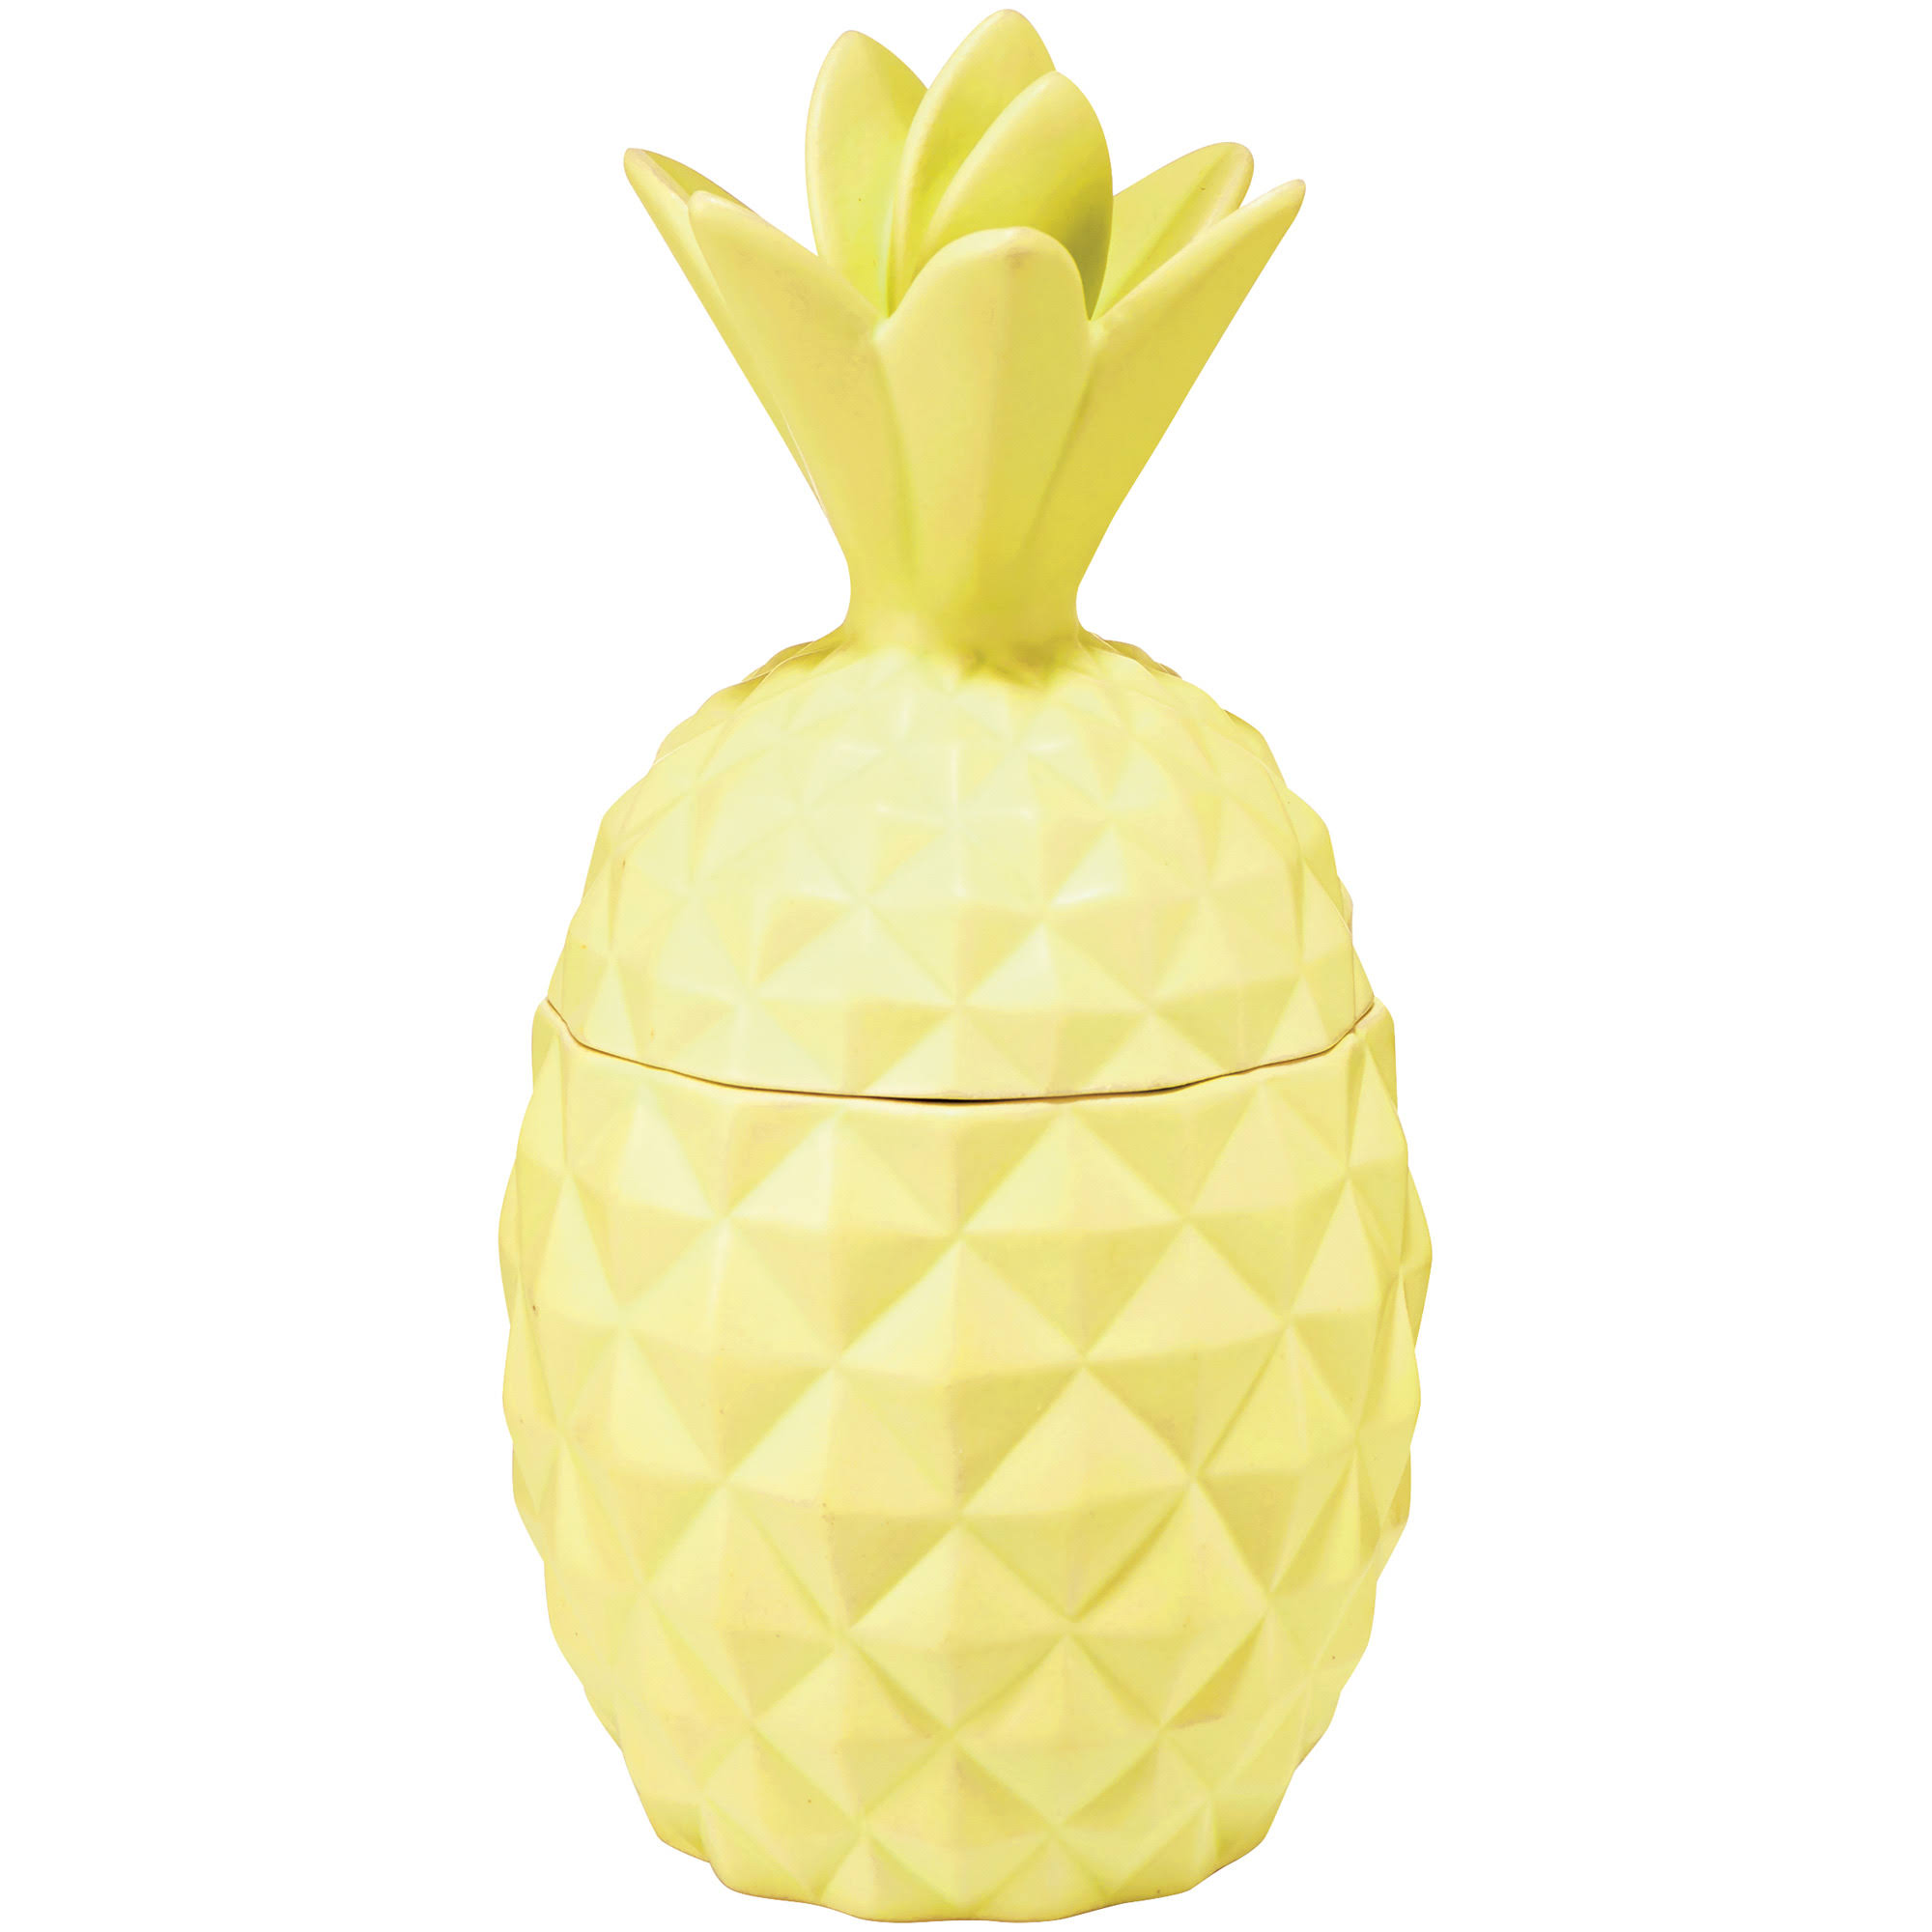 Illume Pineapple Cilantro Ceramic Candle